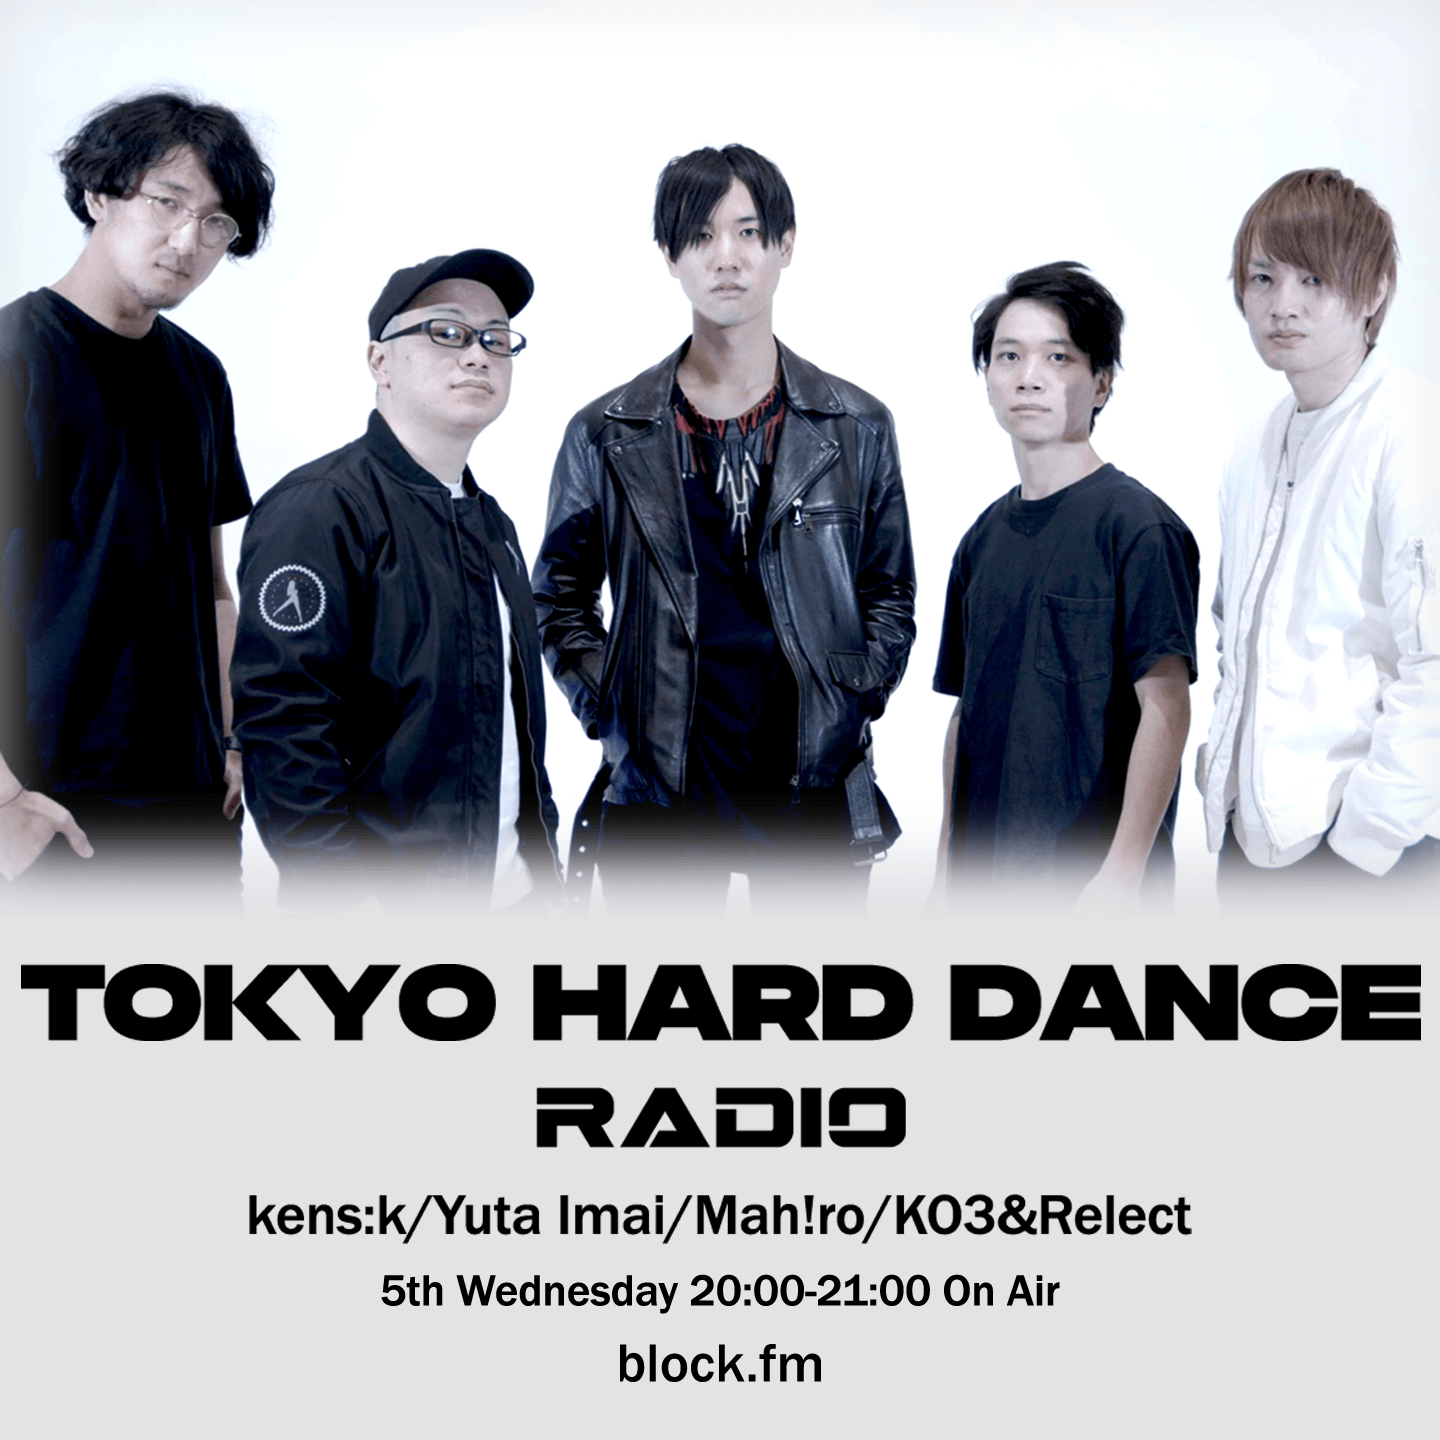 TOKYO HARD DANCE RADIO